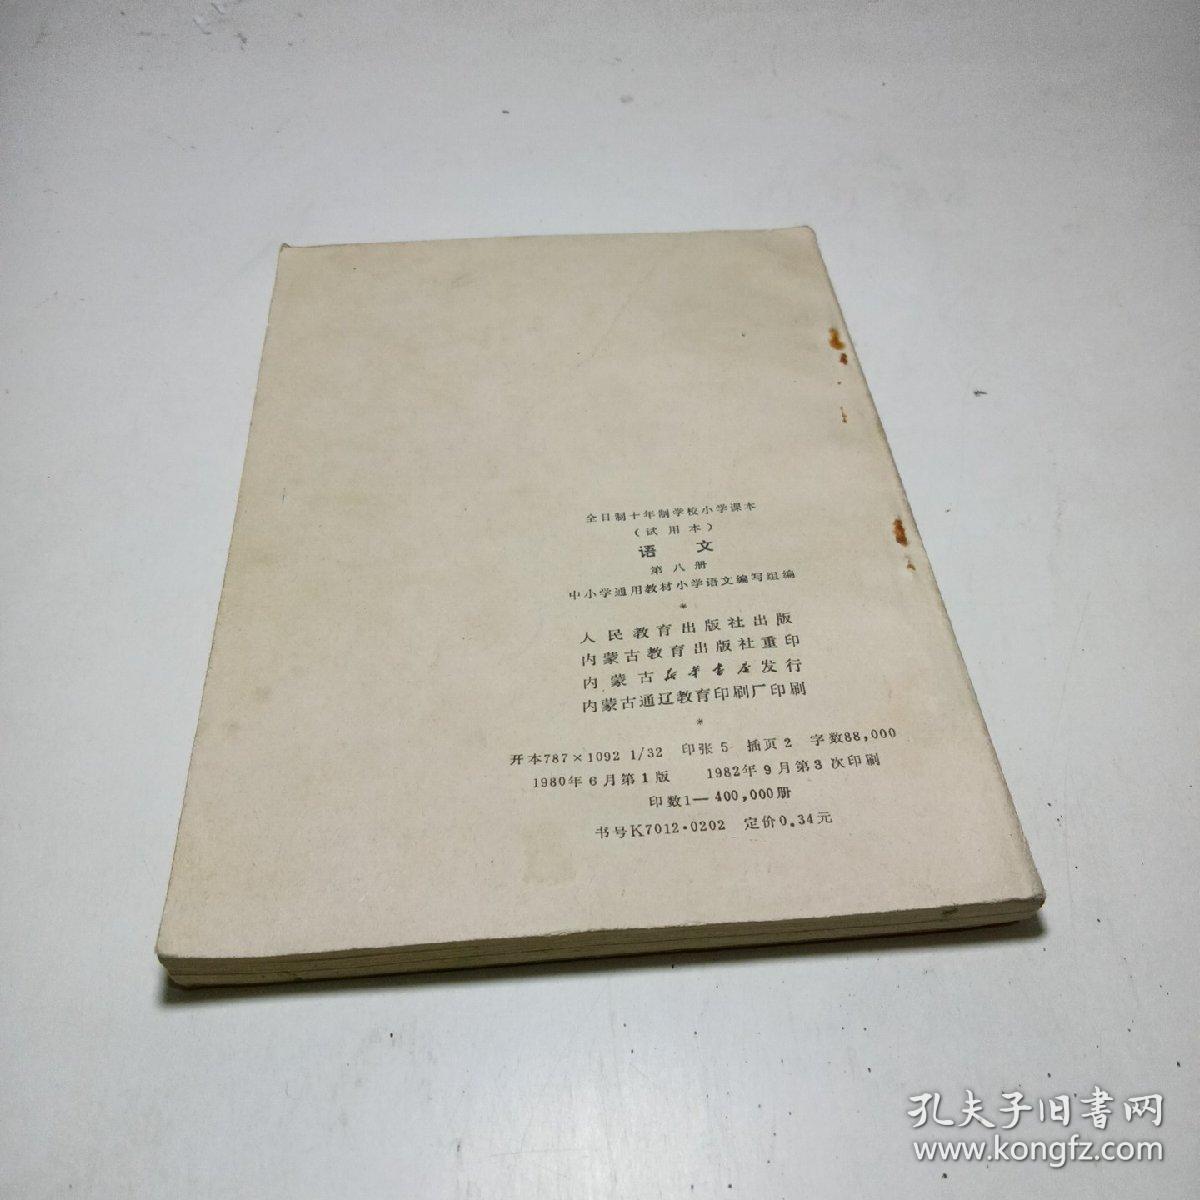 全日制十年制学校小学课本 试用本 语文 第八册 1980年版1982年印刷  无笔记无划线无印章。